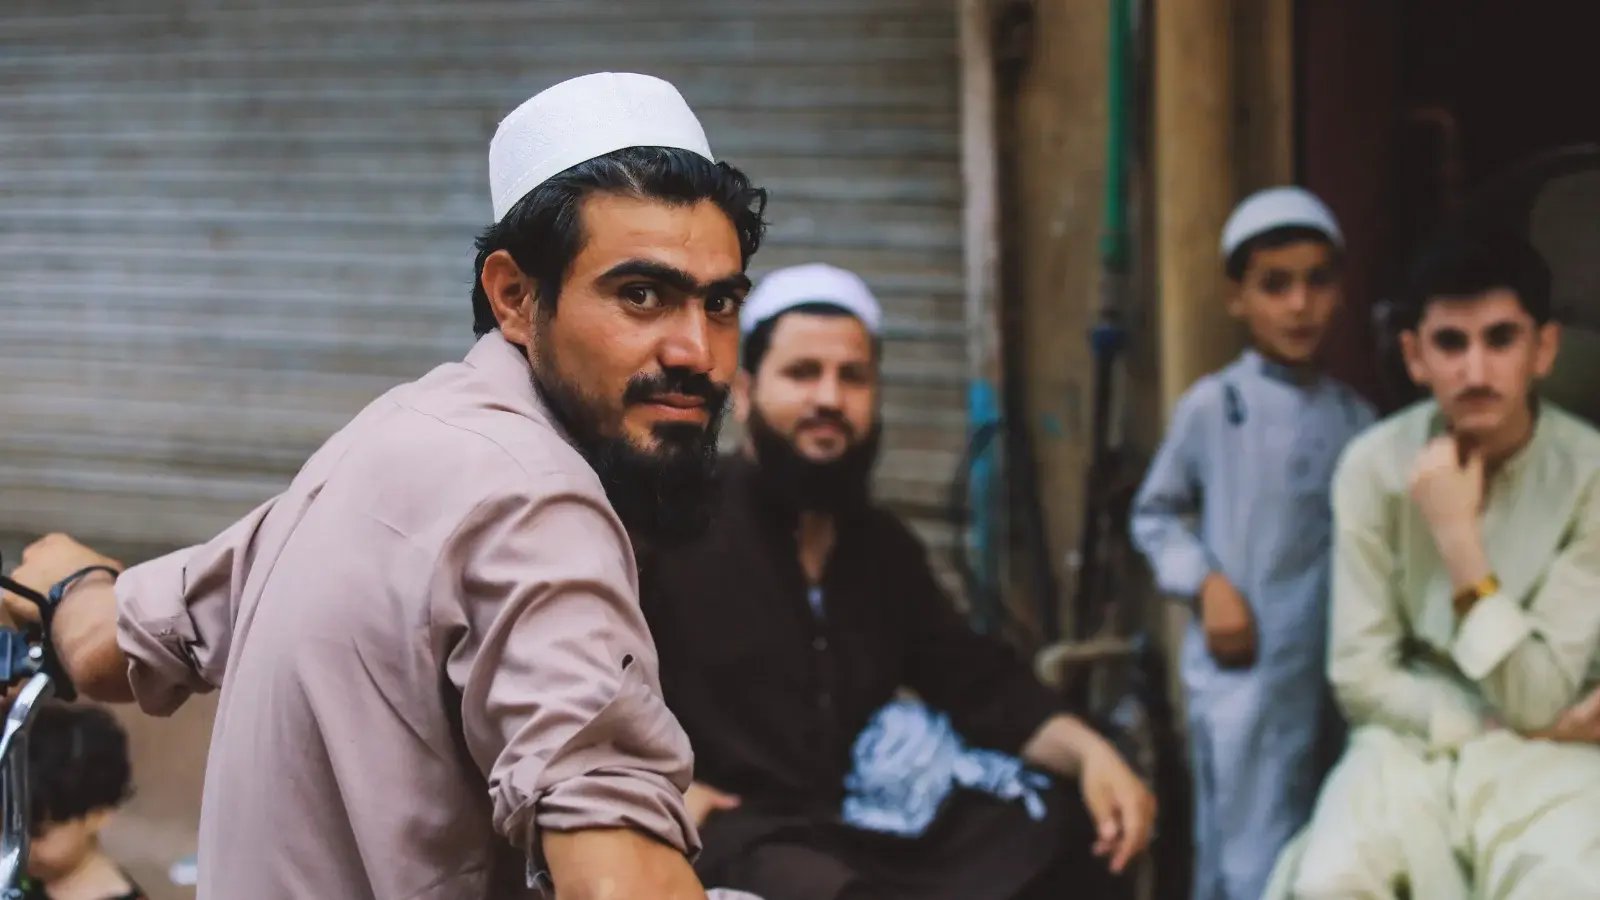 Hombres sentados frente a una tienda en Pakistán